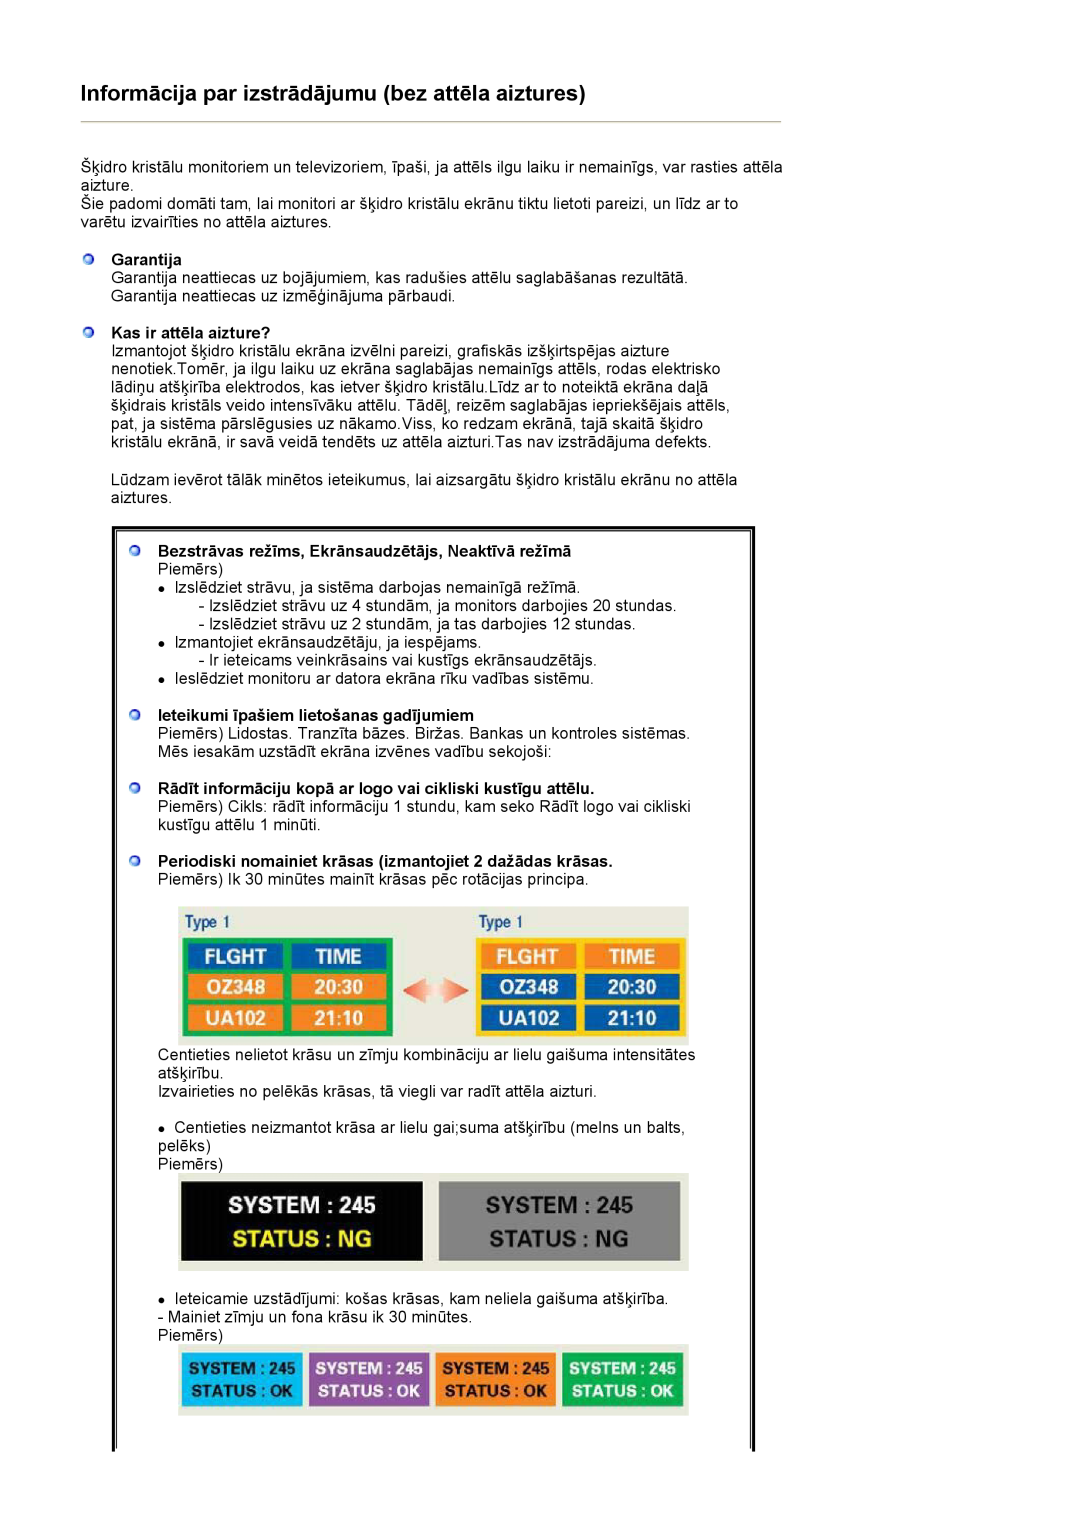 Samsung LS27HUBCB/EDC manual Garantija, Kas ir attēla aizture?, Bezstrāvas režīms, Ekrānsaudzētājs, Neaktīvā režīmā 